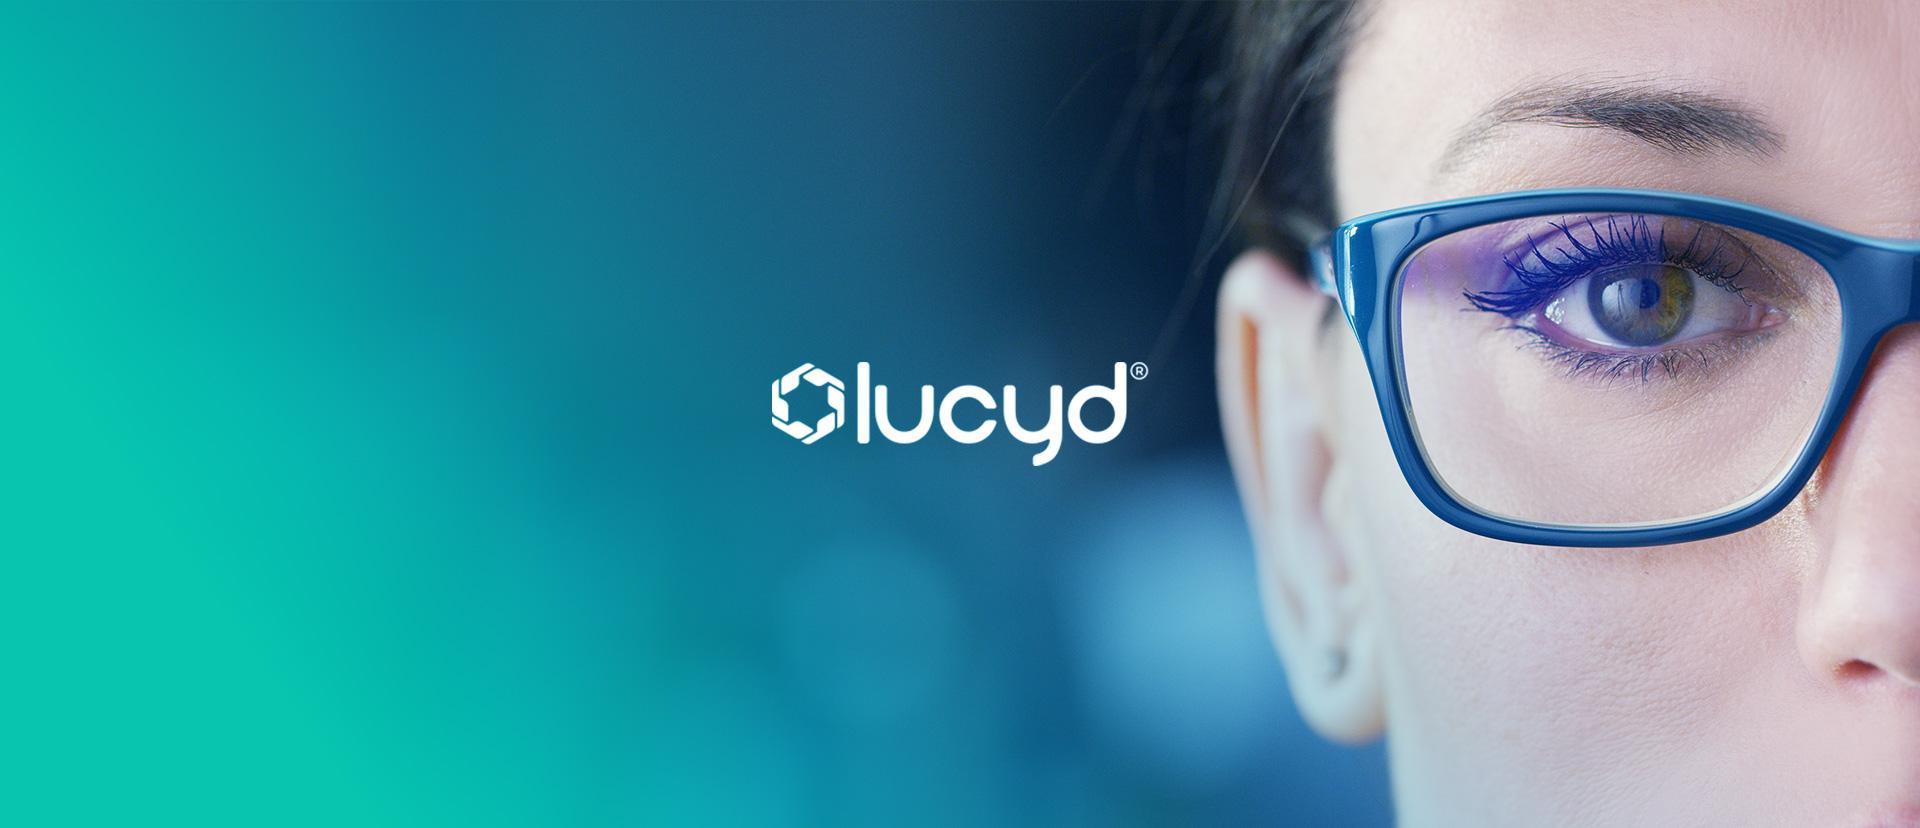 IPO společnosti Innovative Eyewear (LUCY) - AR chytré brýle pro každý den